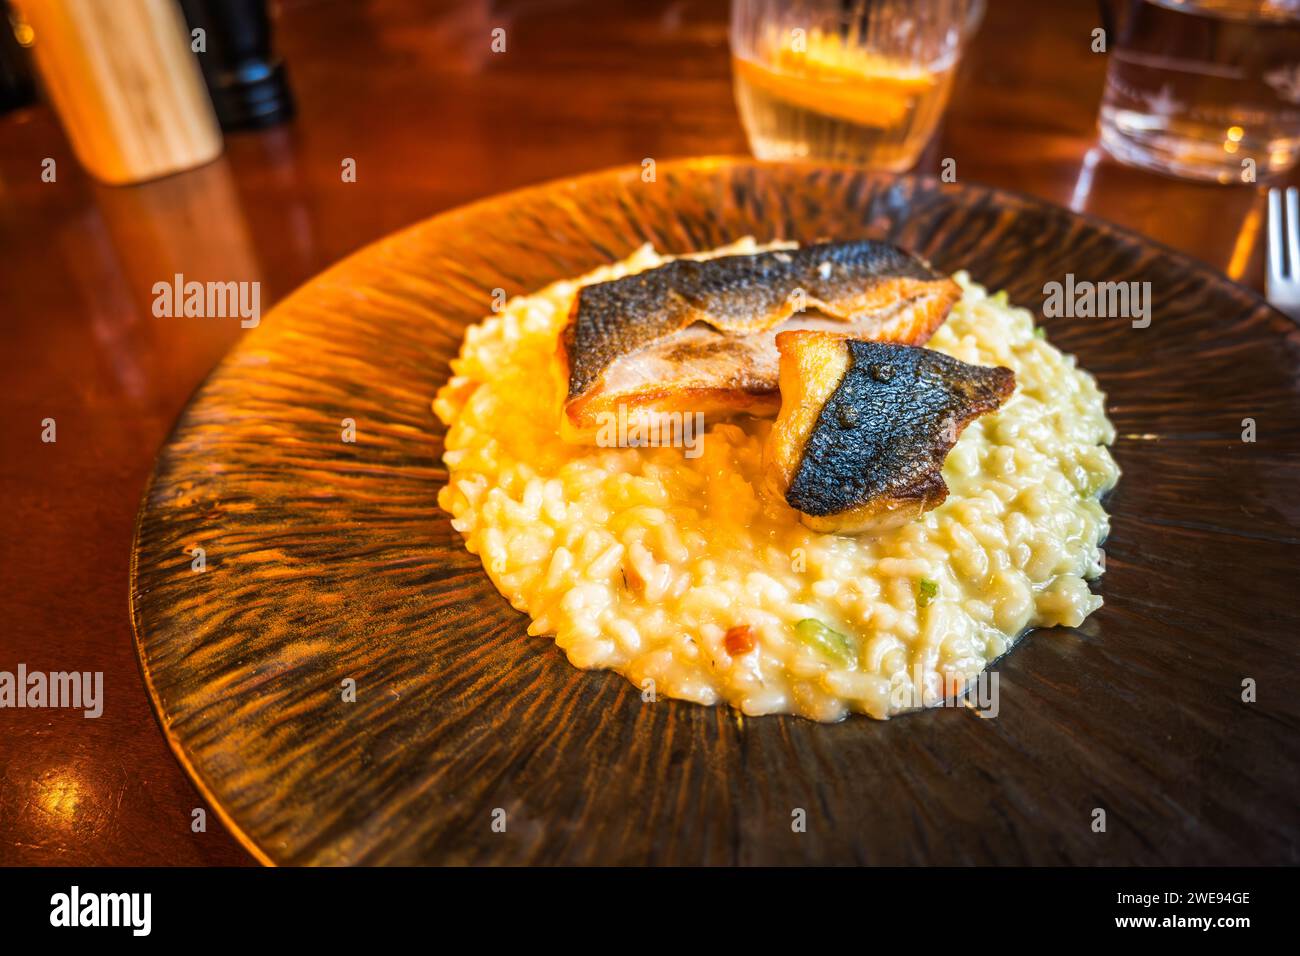 Filetto di pesce arrosto (spigola) su risotto con verdure su piatto decorativo, bevanda, bicchiere sul tavolo del ristorante. Cucina italiana. Foto Stock